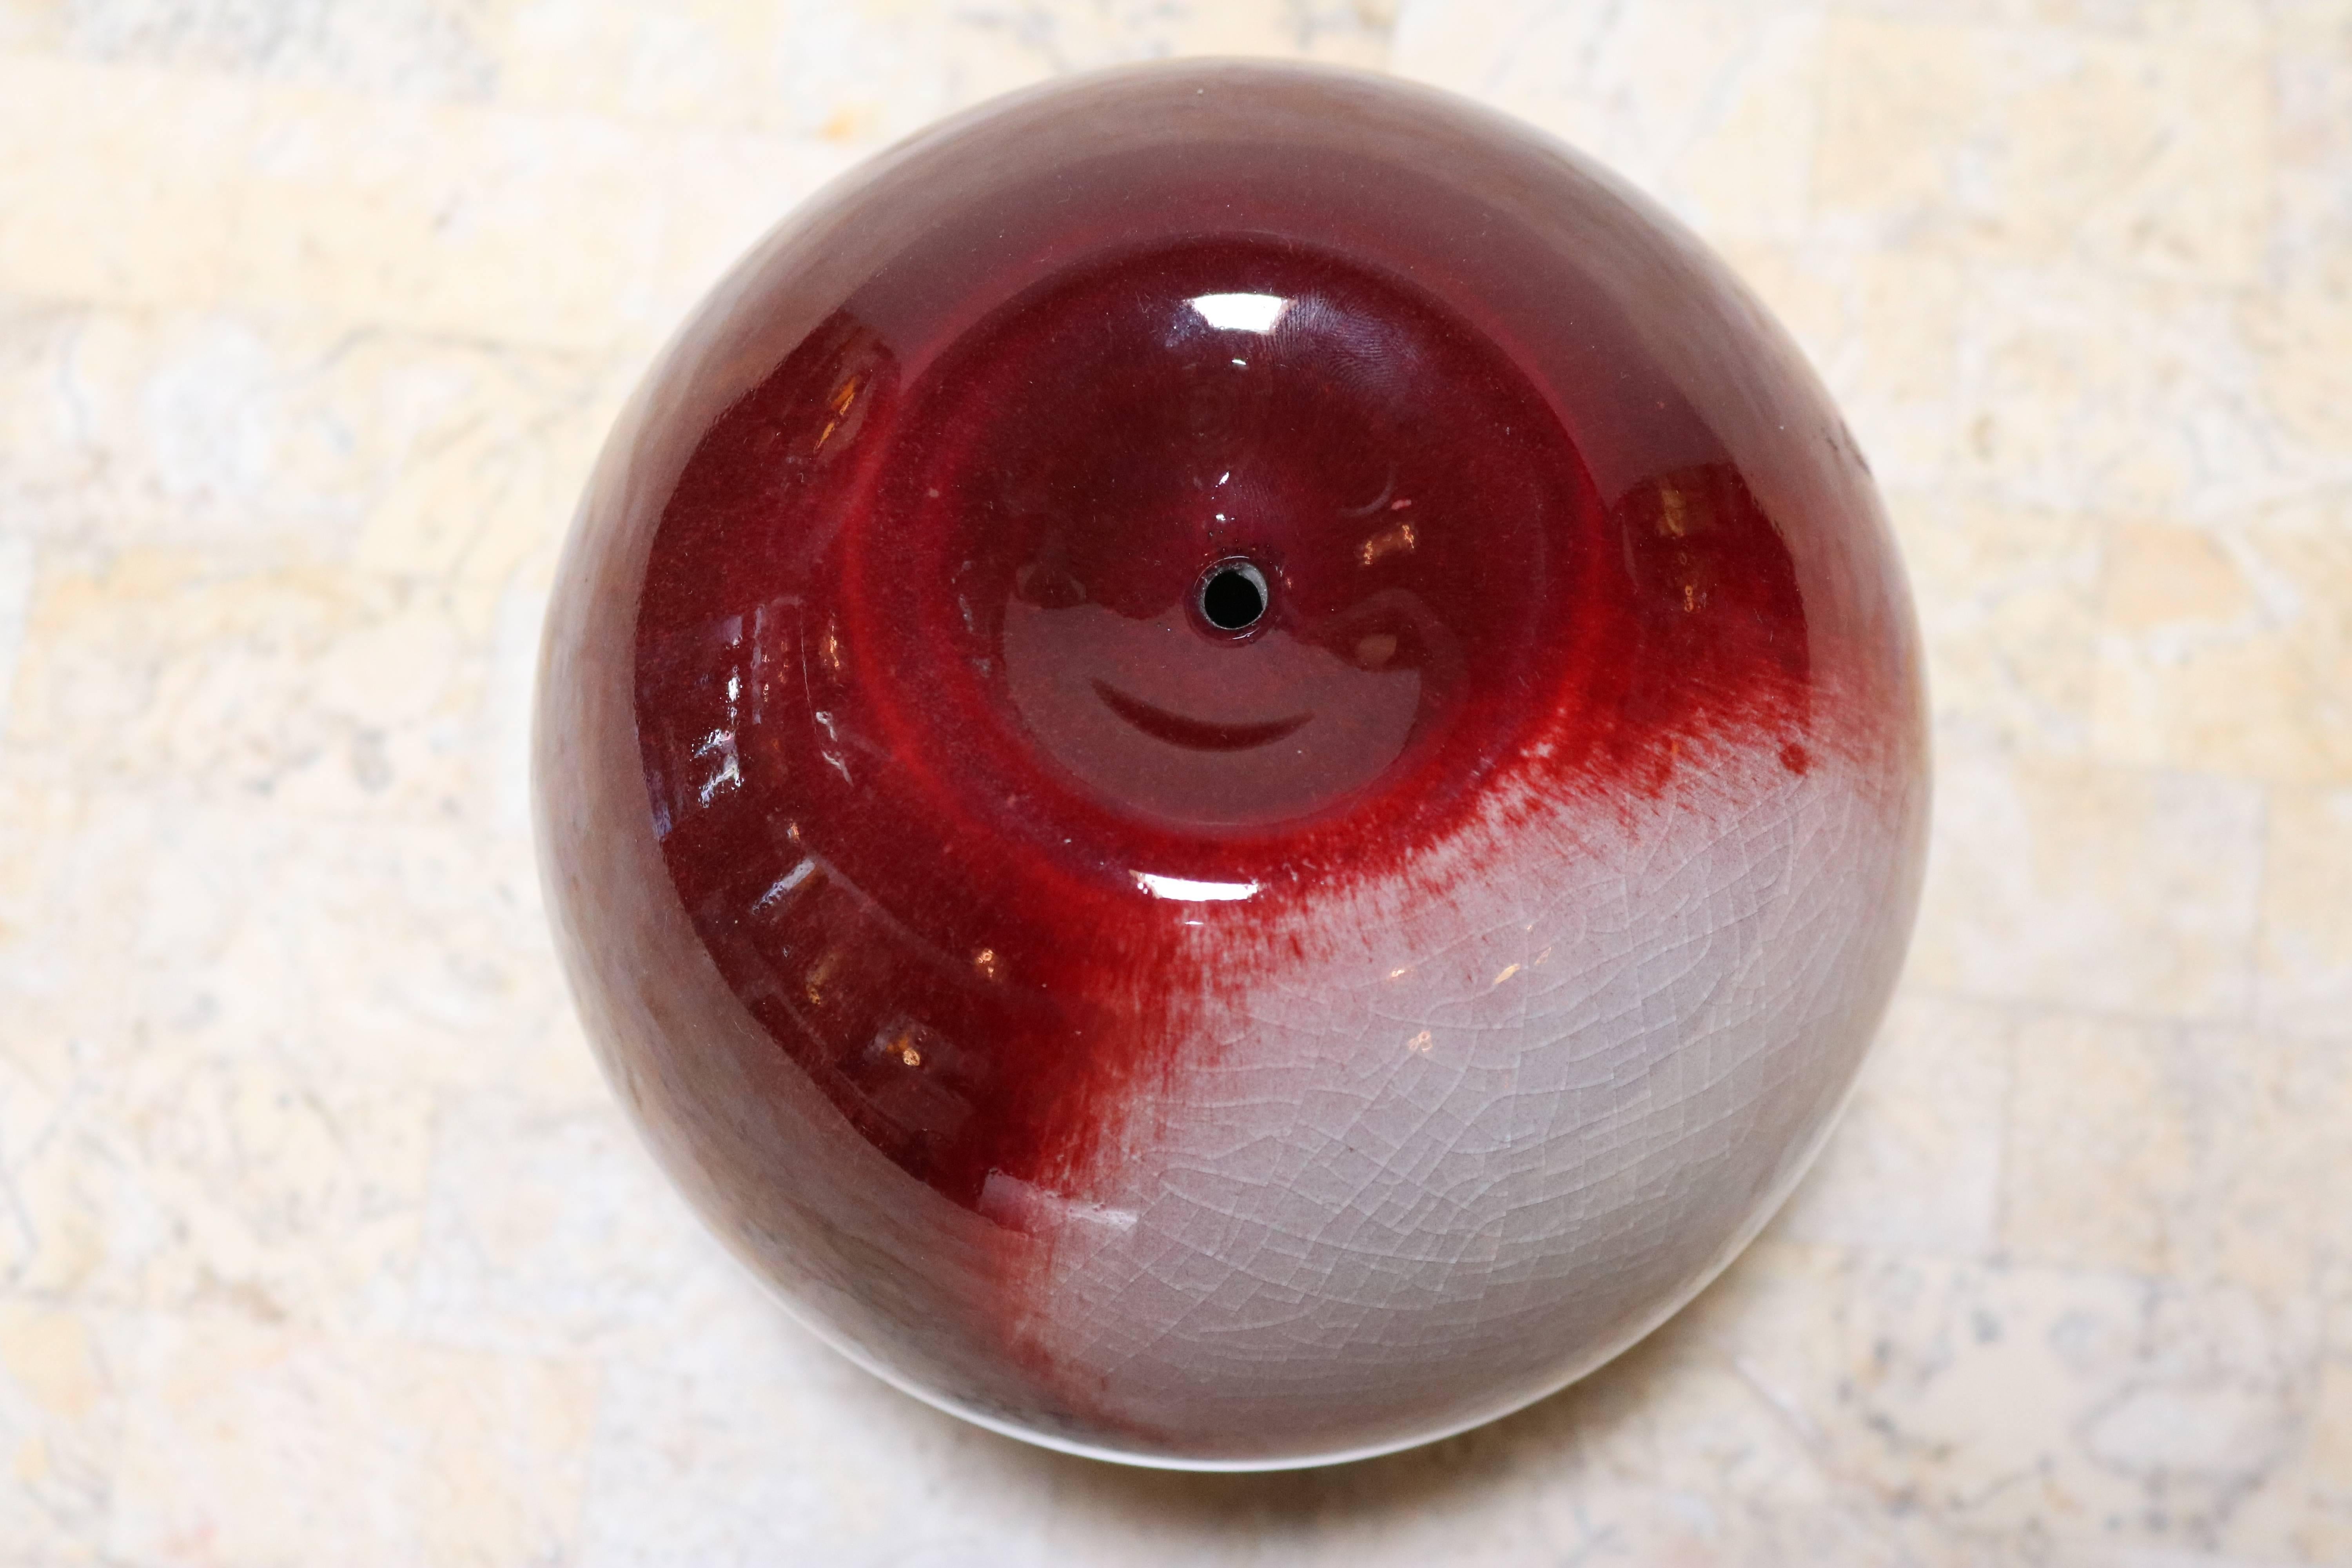 Contemporary Candy Apple Red and Cream Decorative Ceramic by Masuo Ojima